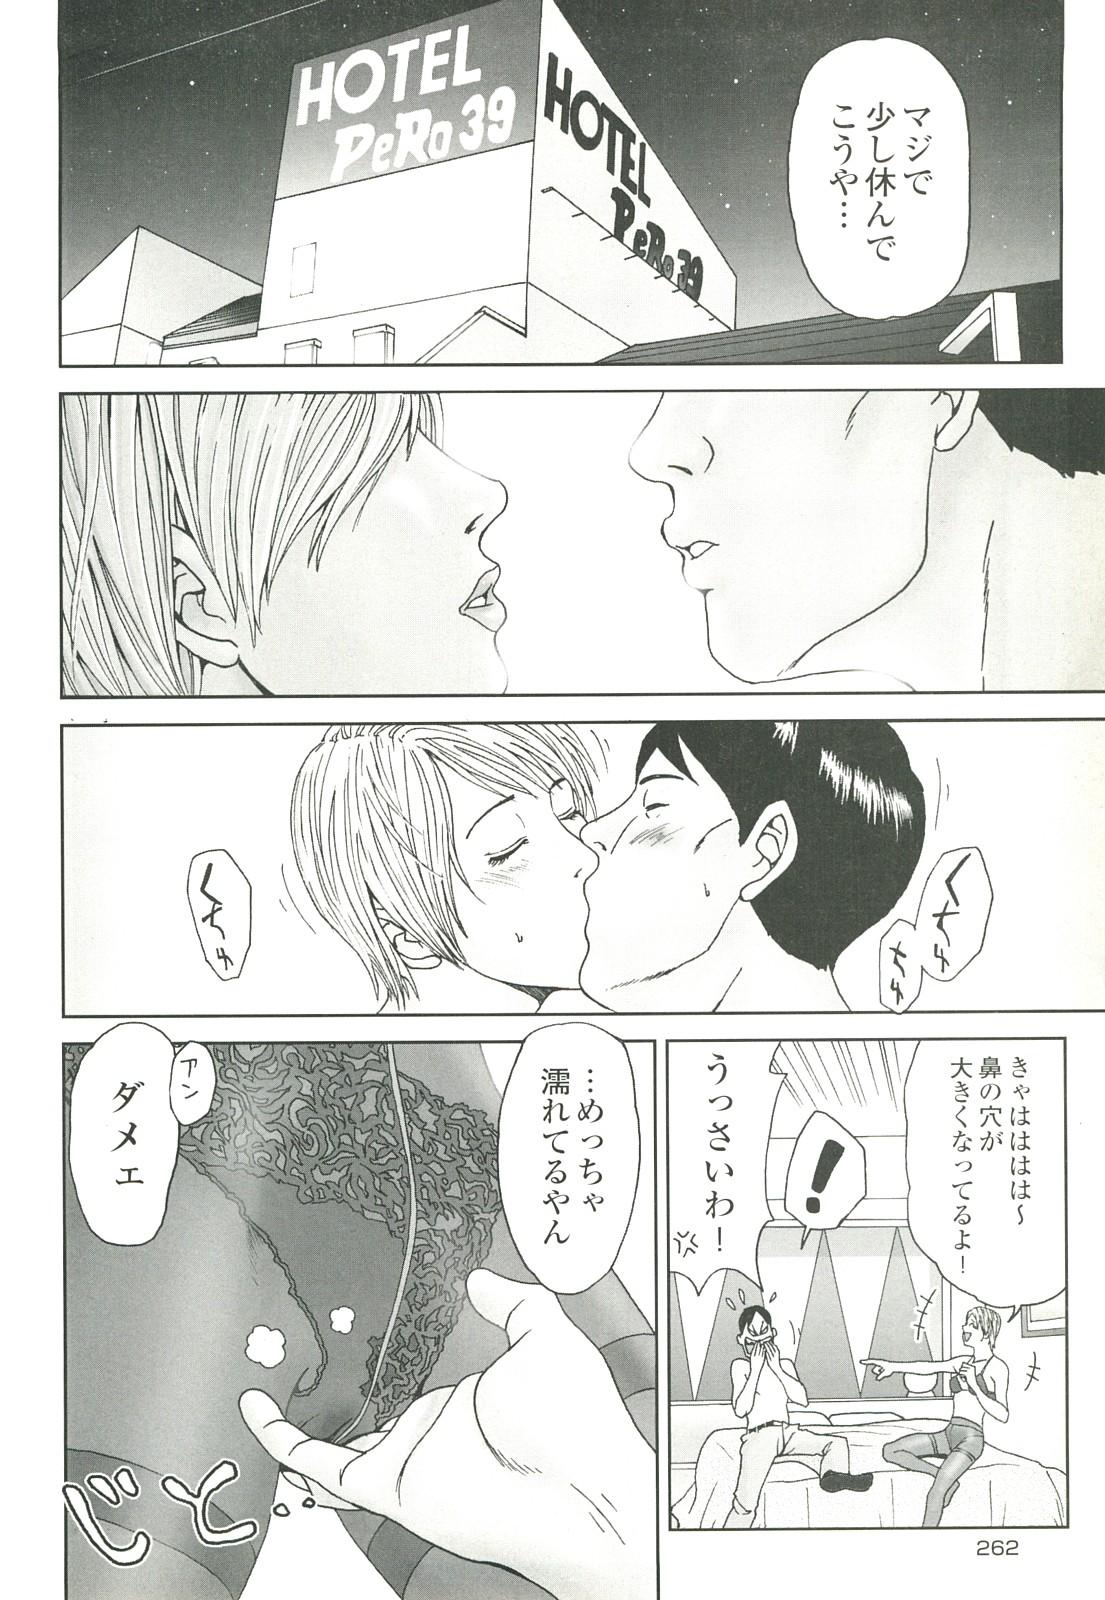 コミック裏モノJAPAN Vol.18 今井のりたつスペシャル号 261